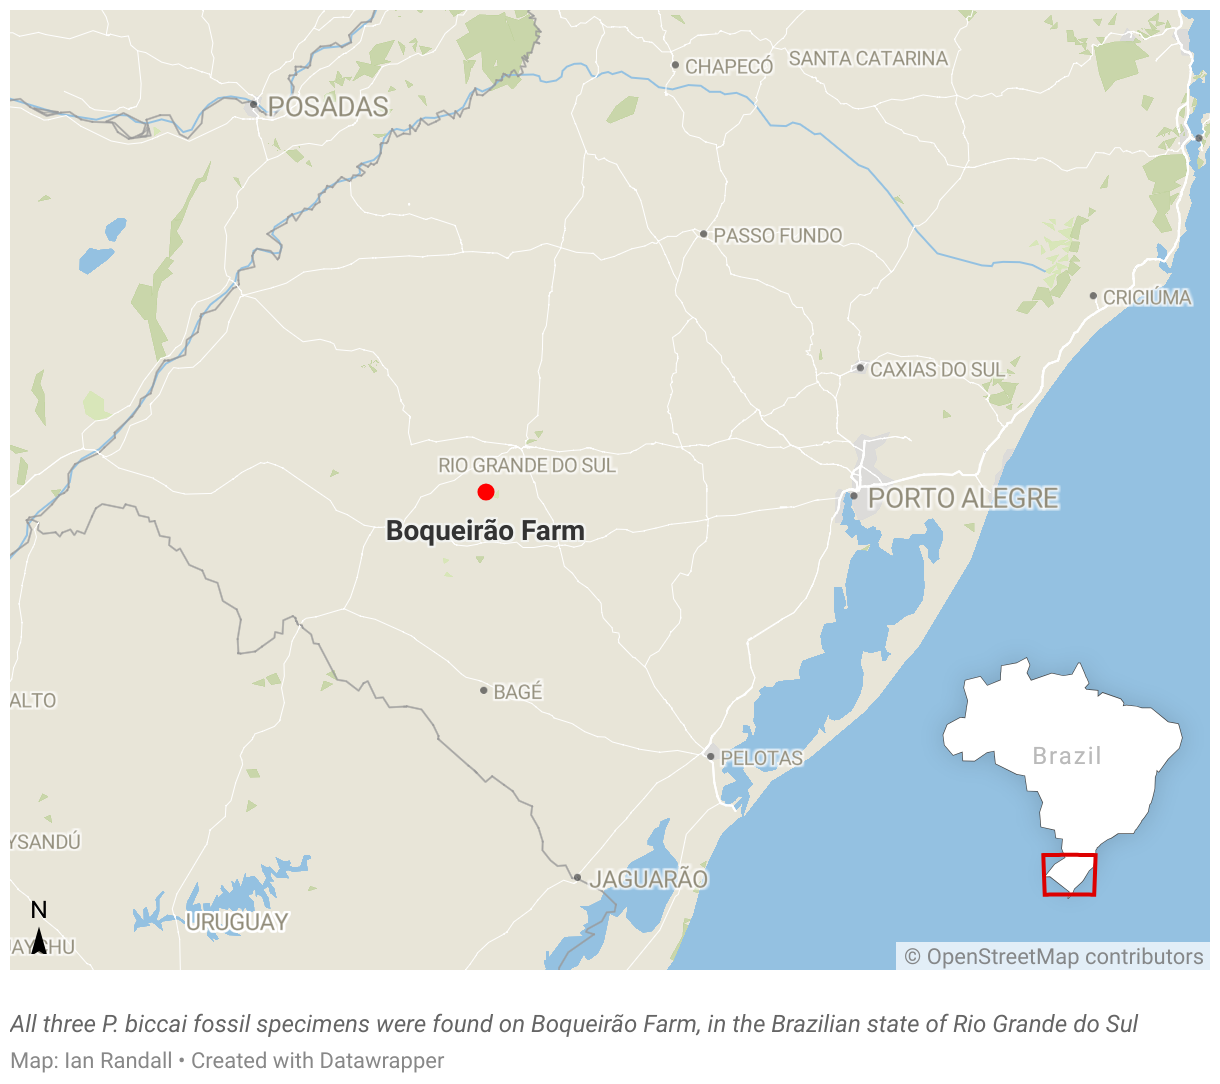 A map showing the location of Boqueirão Farm in the Brazilian state of Rio Grande do Sul